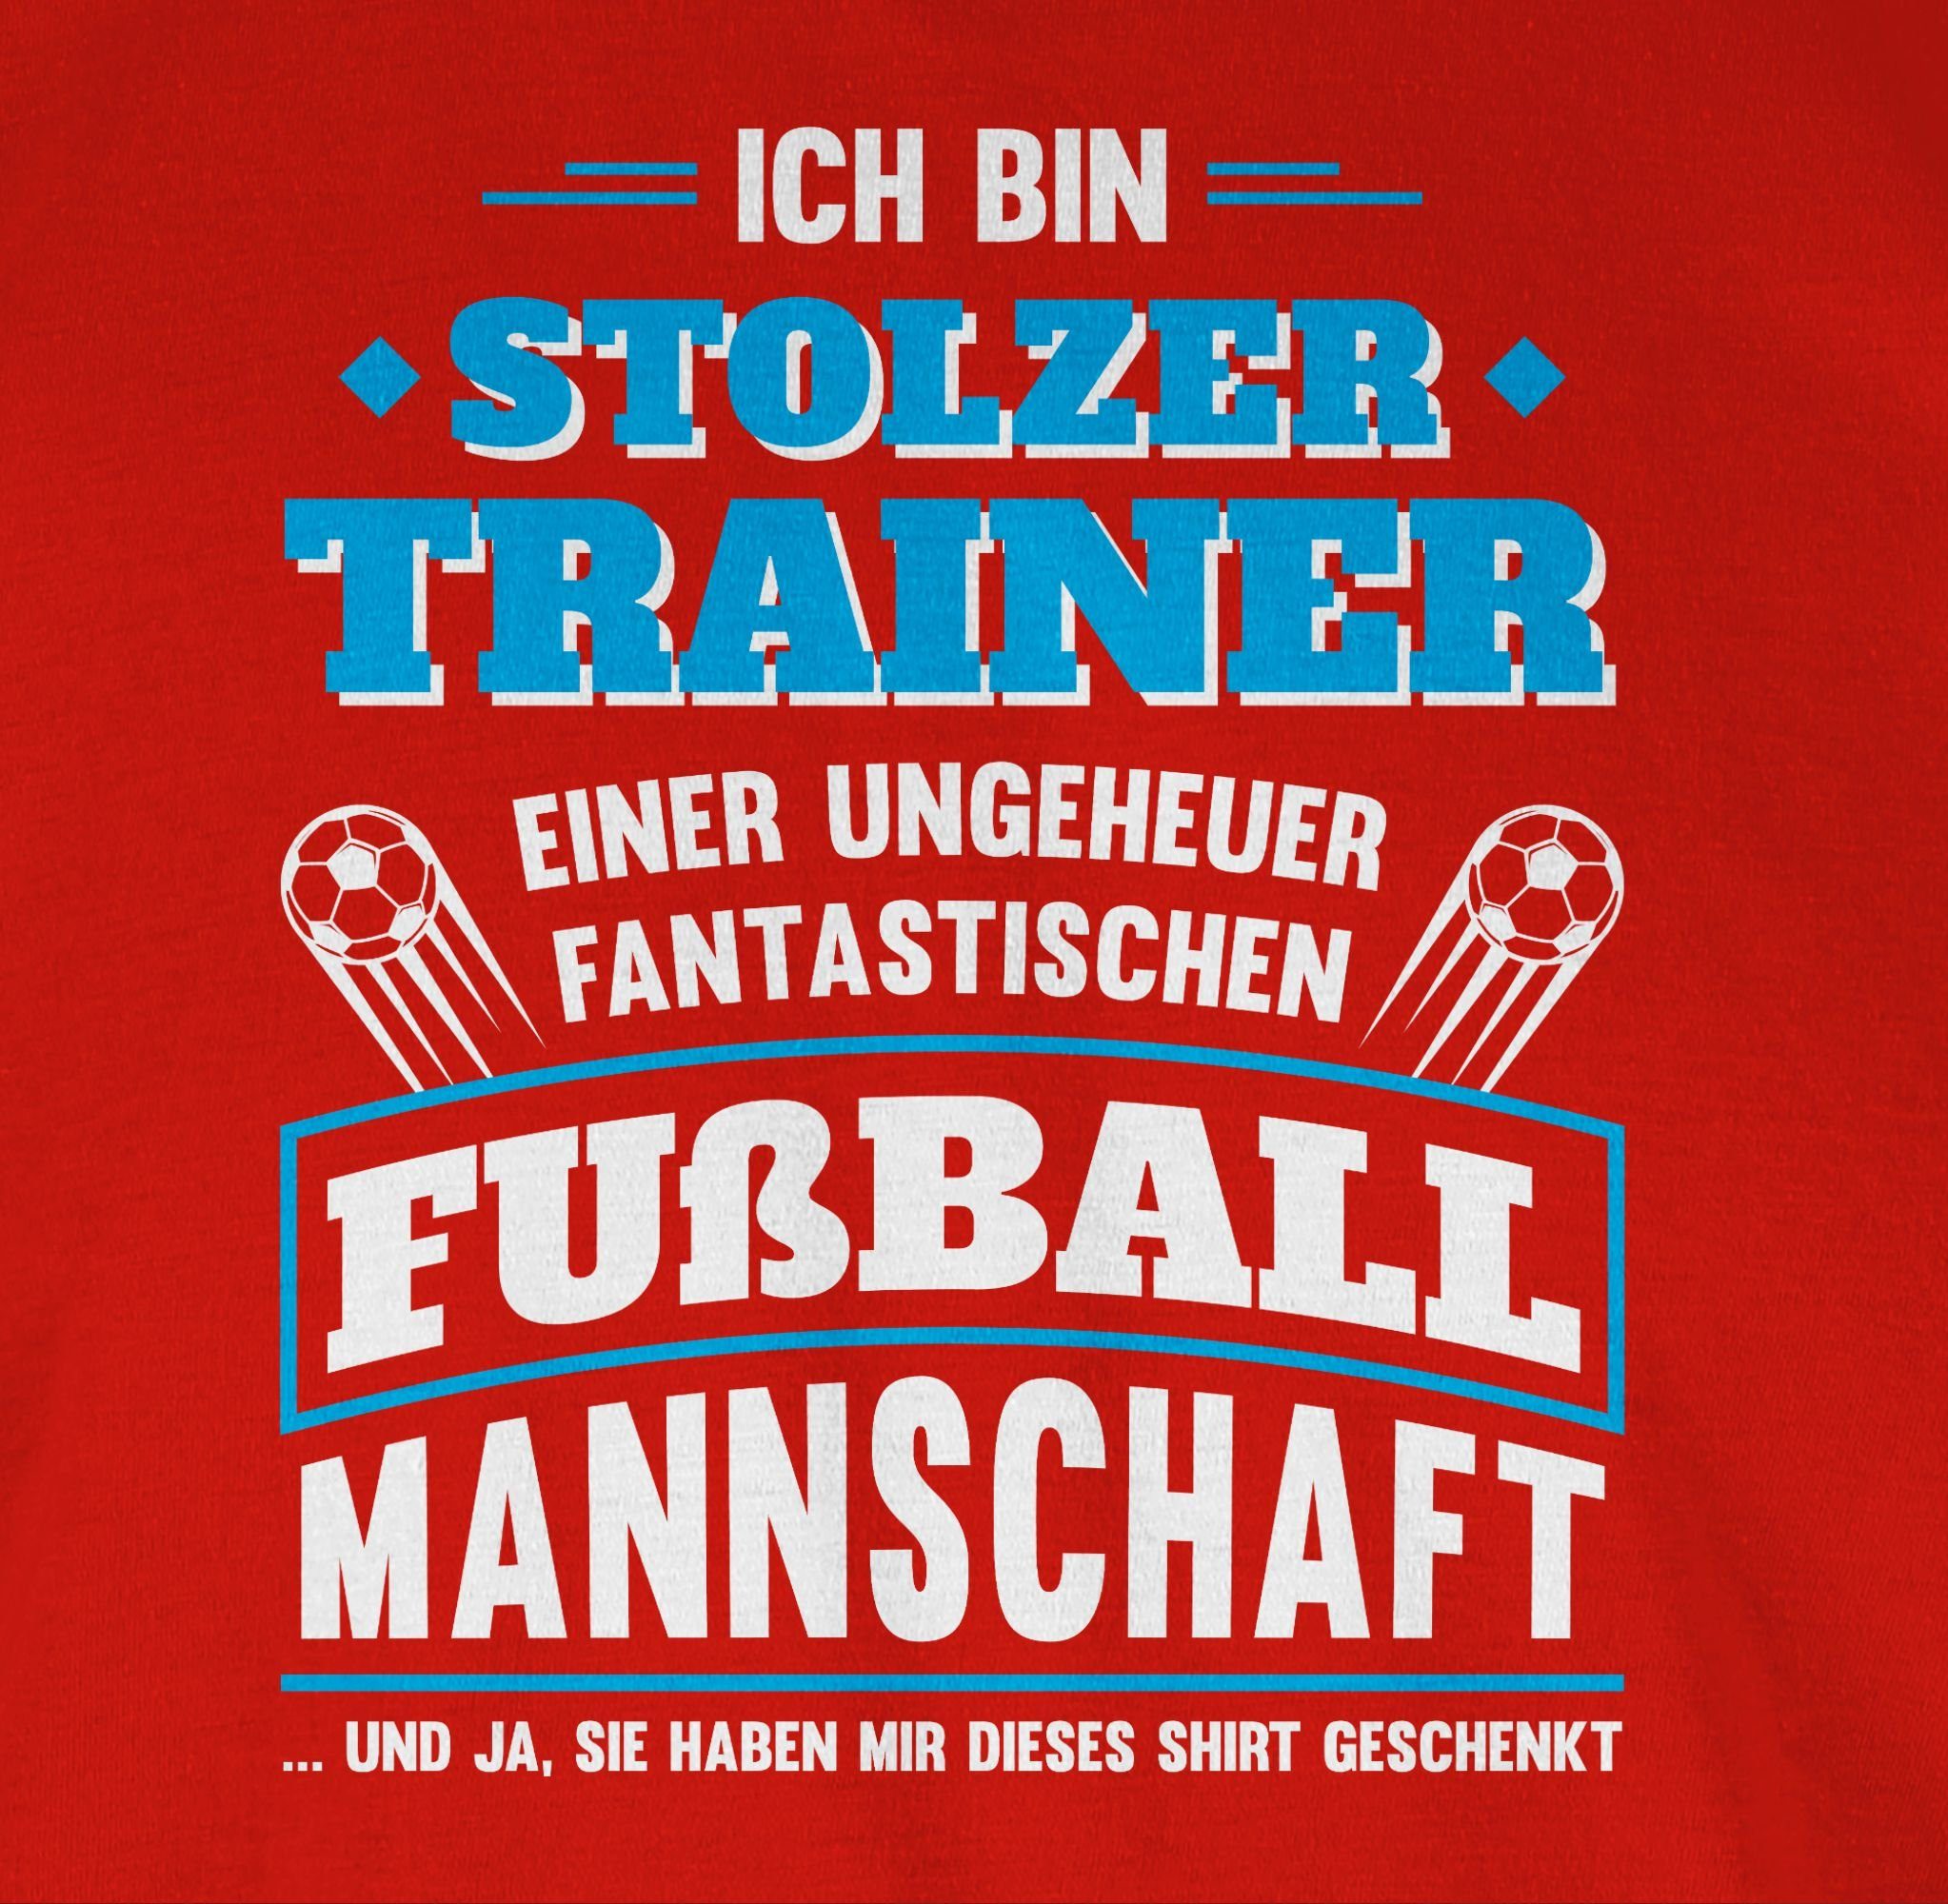 Rot fantastischen Stolzer 2024 EM Shirtracer Fussball einer T-Shirt Trainer 3 Fußballmannschaft